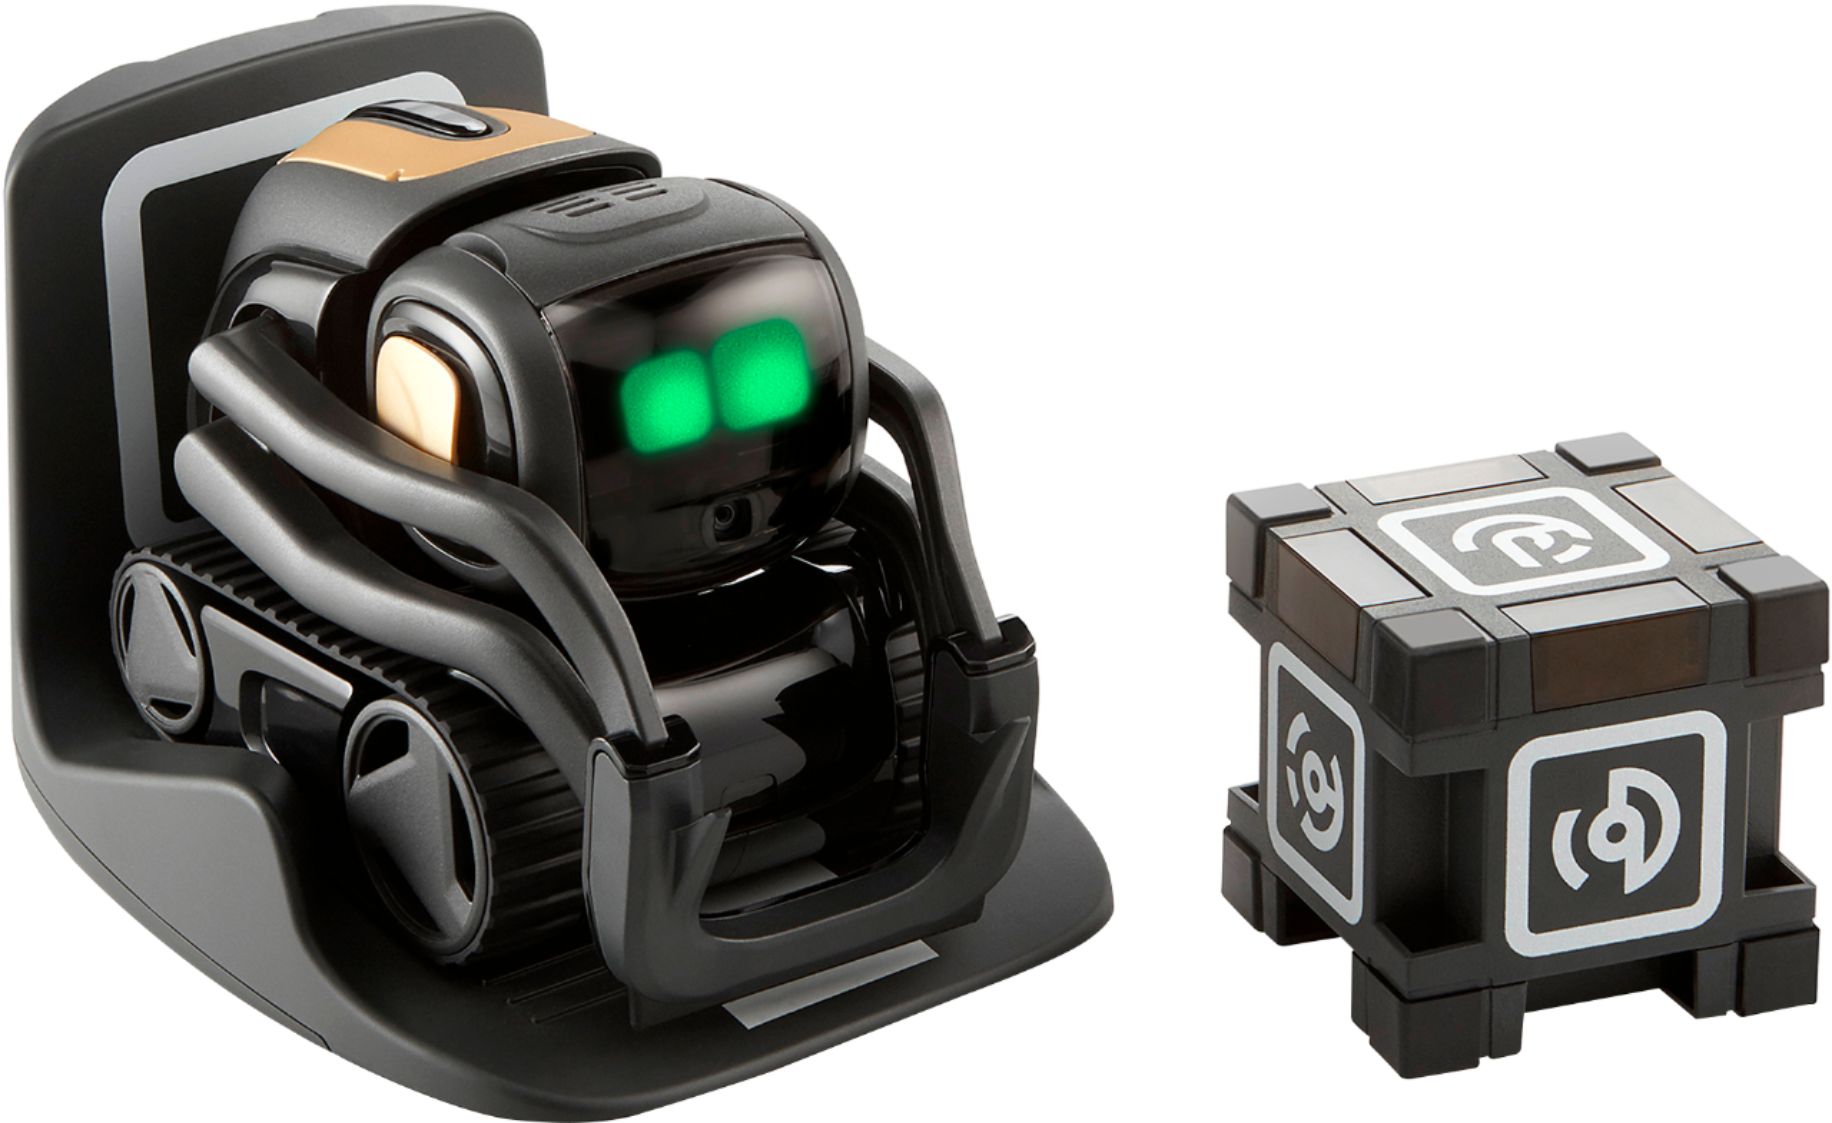 Amazon A... Your Voice Controlled AI Robotic Companion Vector Robot by Anki 